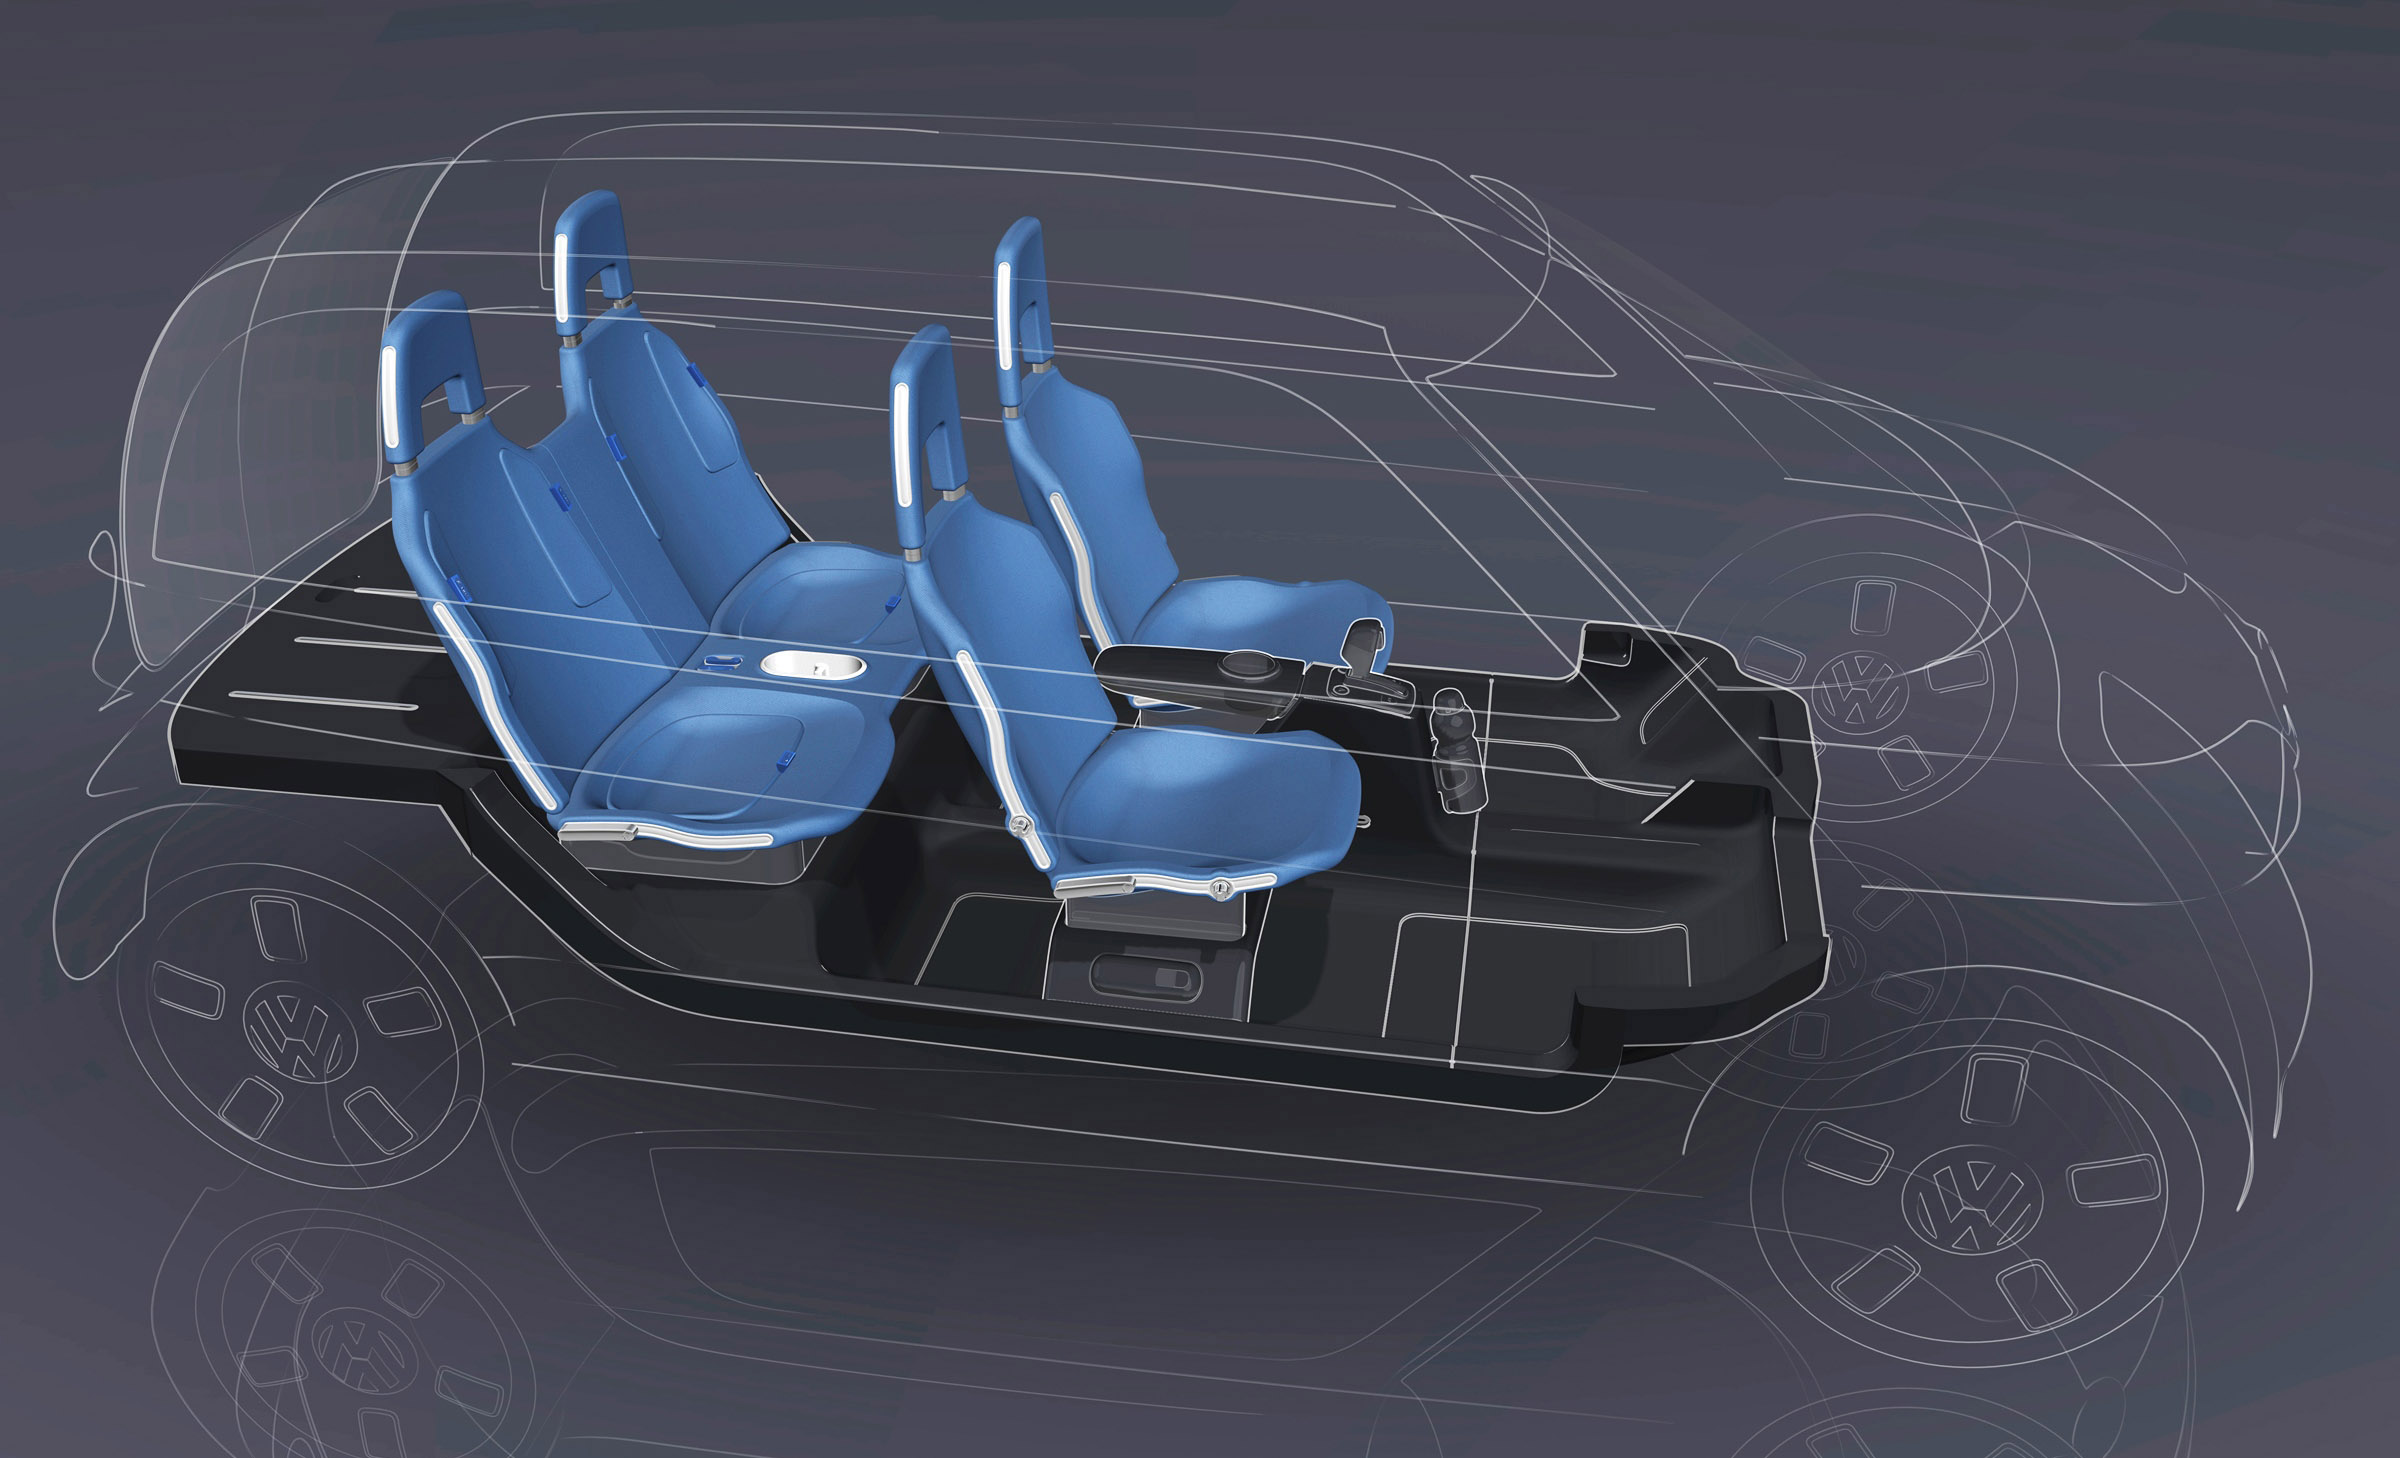 Volkswagen space up Concept